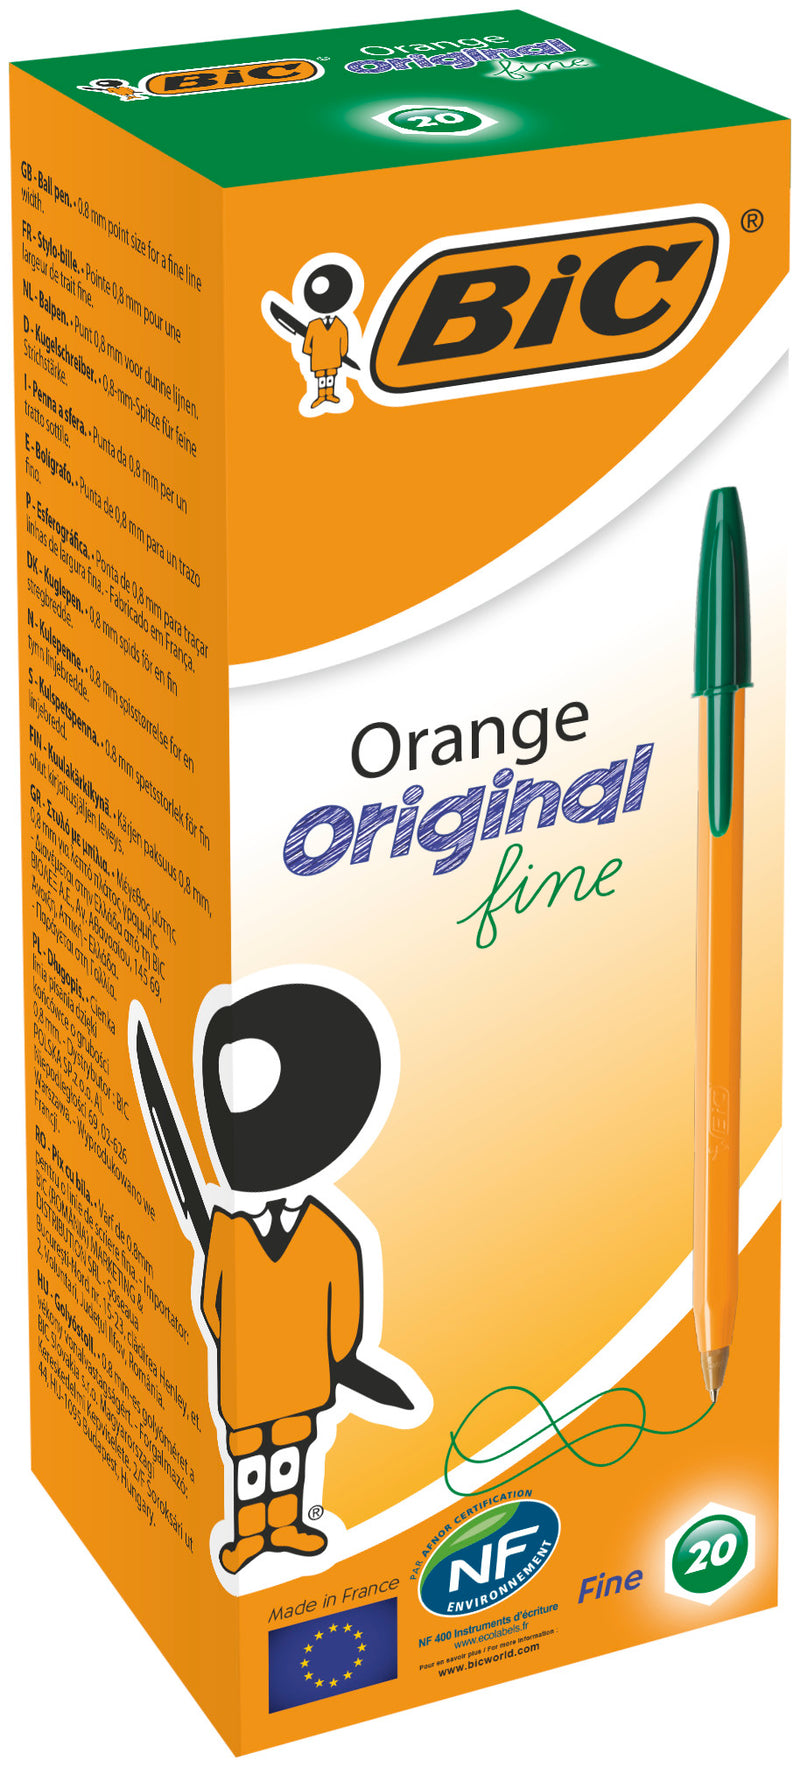 BIC Orange Original Stylos-Bille Pointe Fine (0,8 mm) - boite de 50